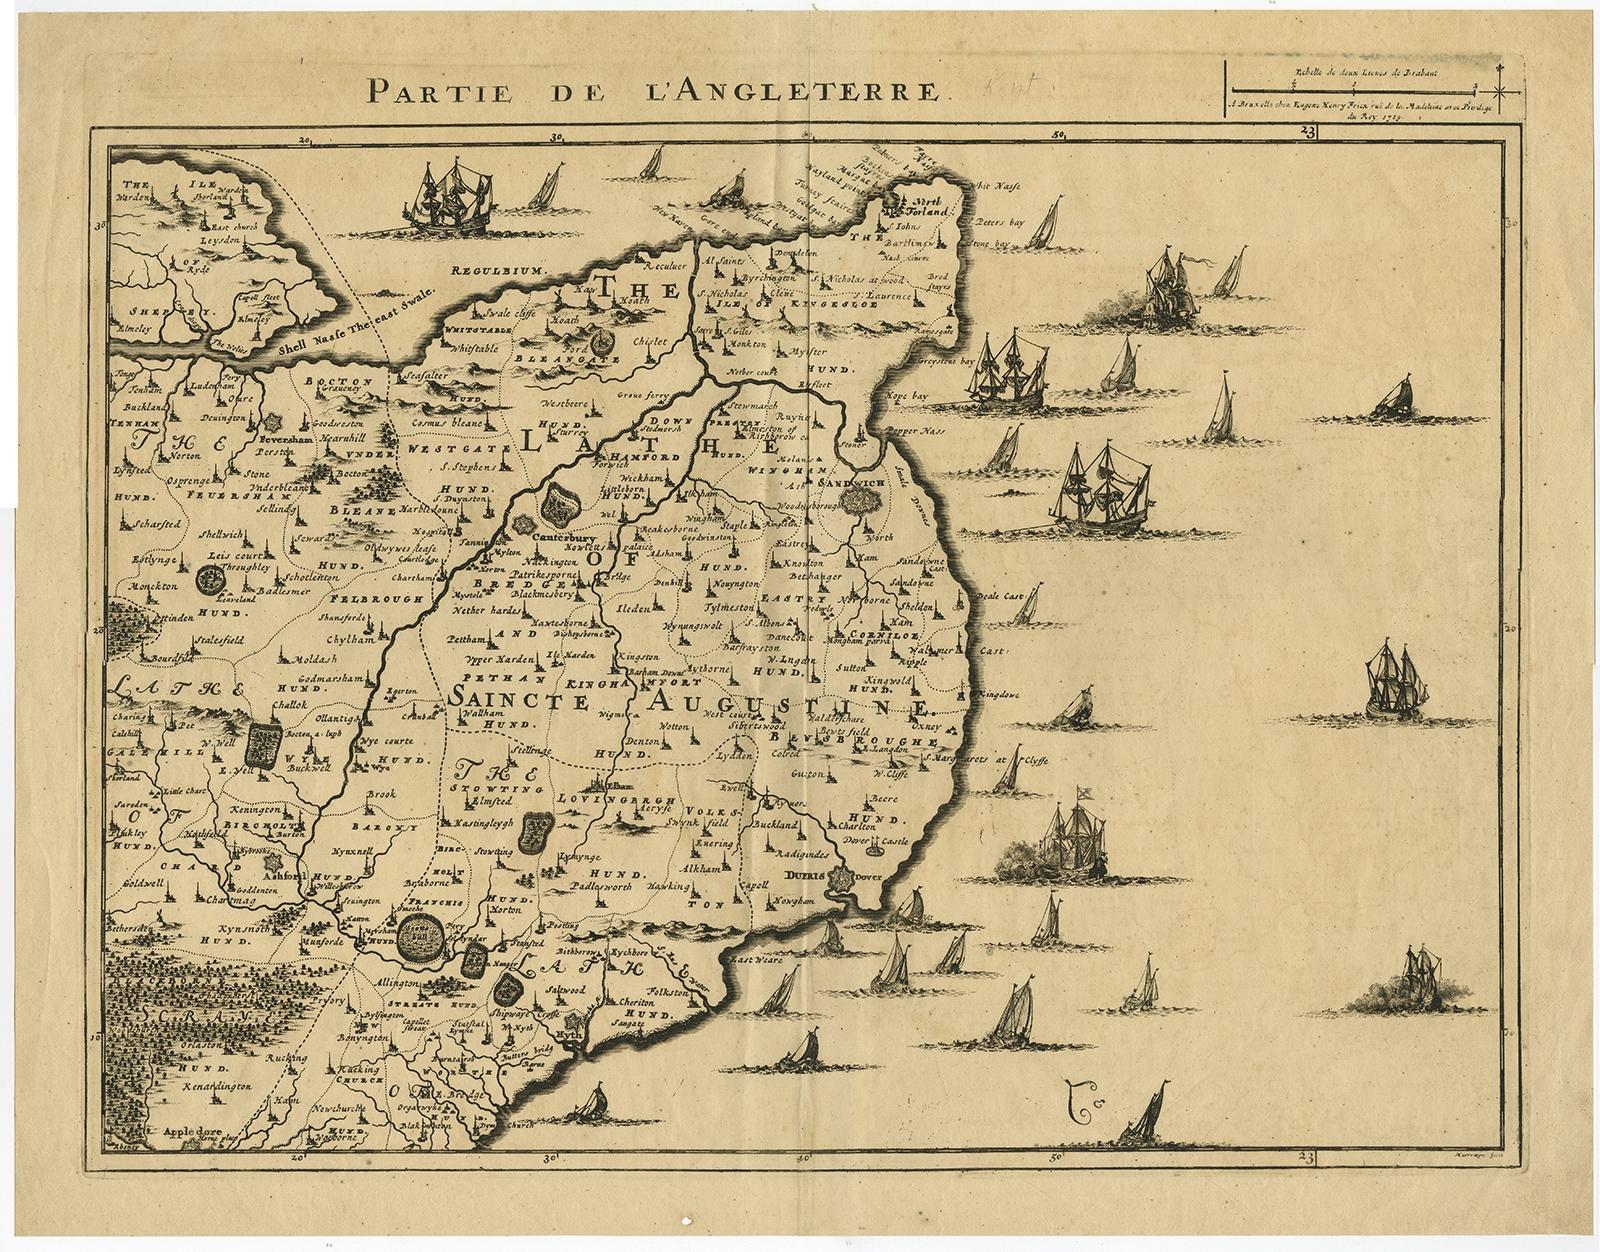 Antike Karte mit dem Titel 'Partie de L'Angleterre' Ungewöhnliche Karte der englischen Kanalküste mit vielen Booten auf dem Meer. Quelle unbekannt, muss noch ermittelt werden.

Künstler und Graveure: Hergestellt von 